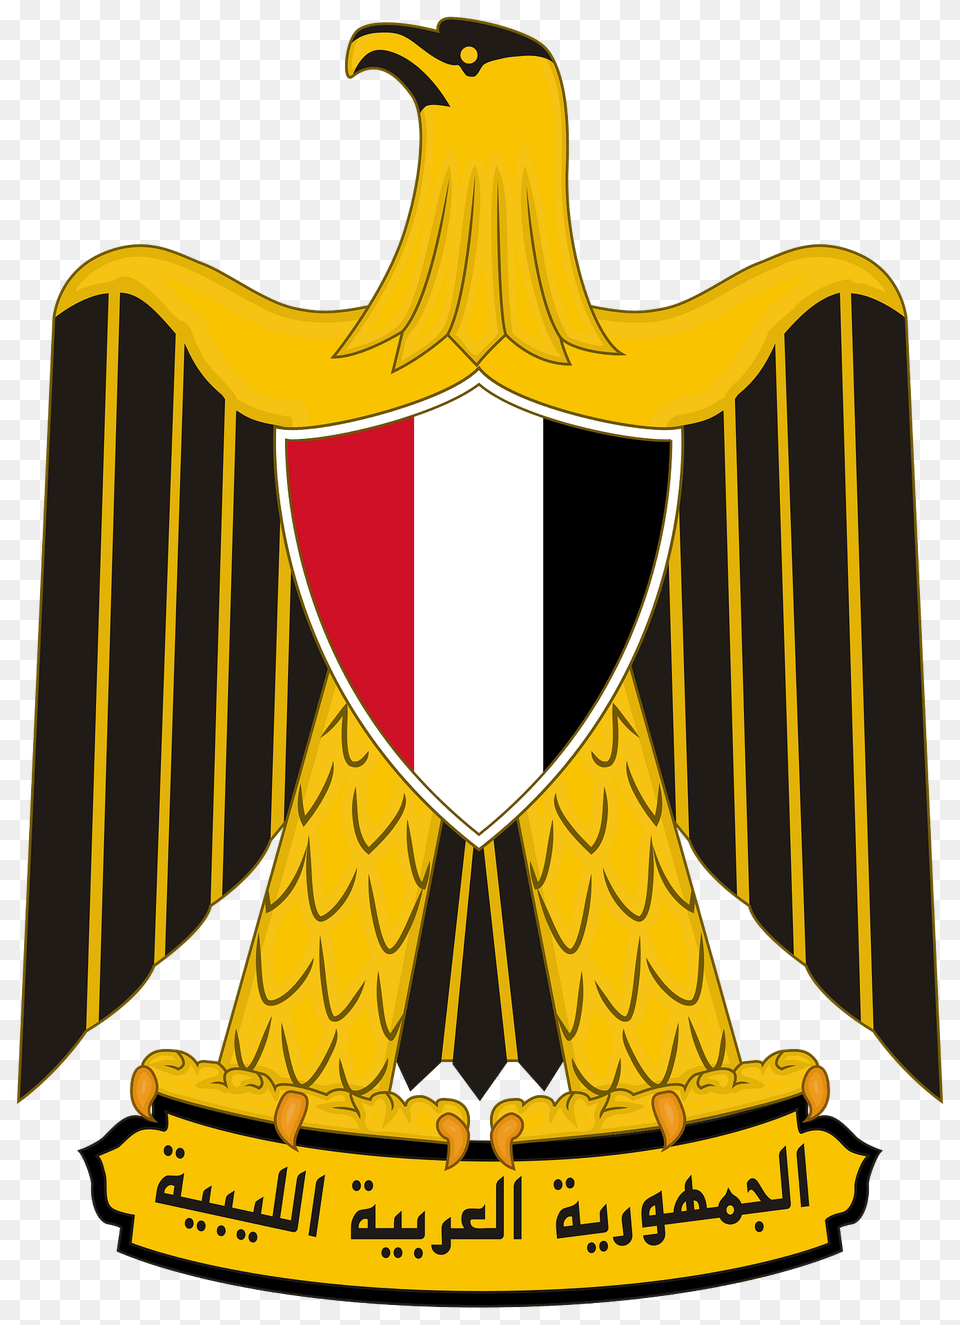 Coat Of Arms Of Libya Clipart, Logo, Emblem, Symbol Free Transparent Png